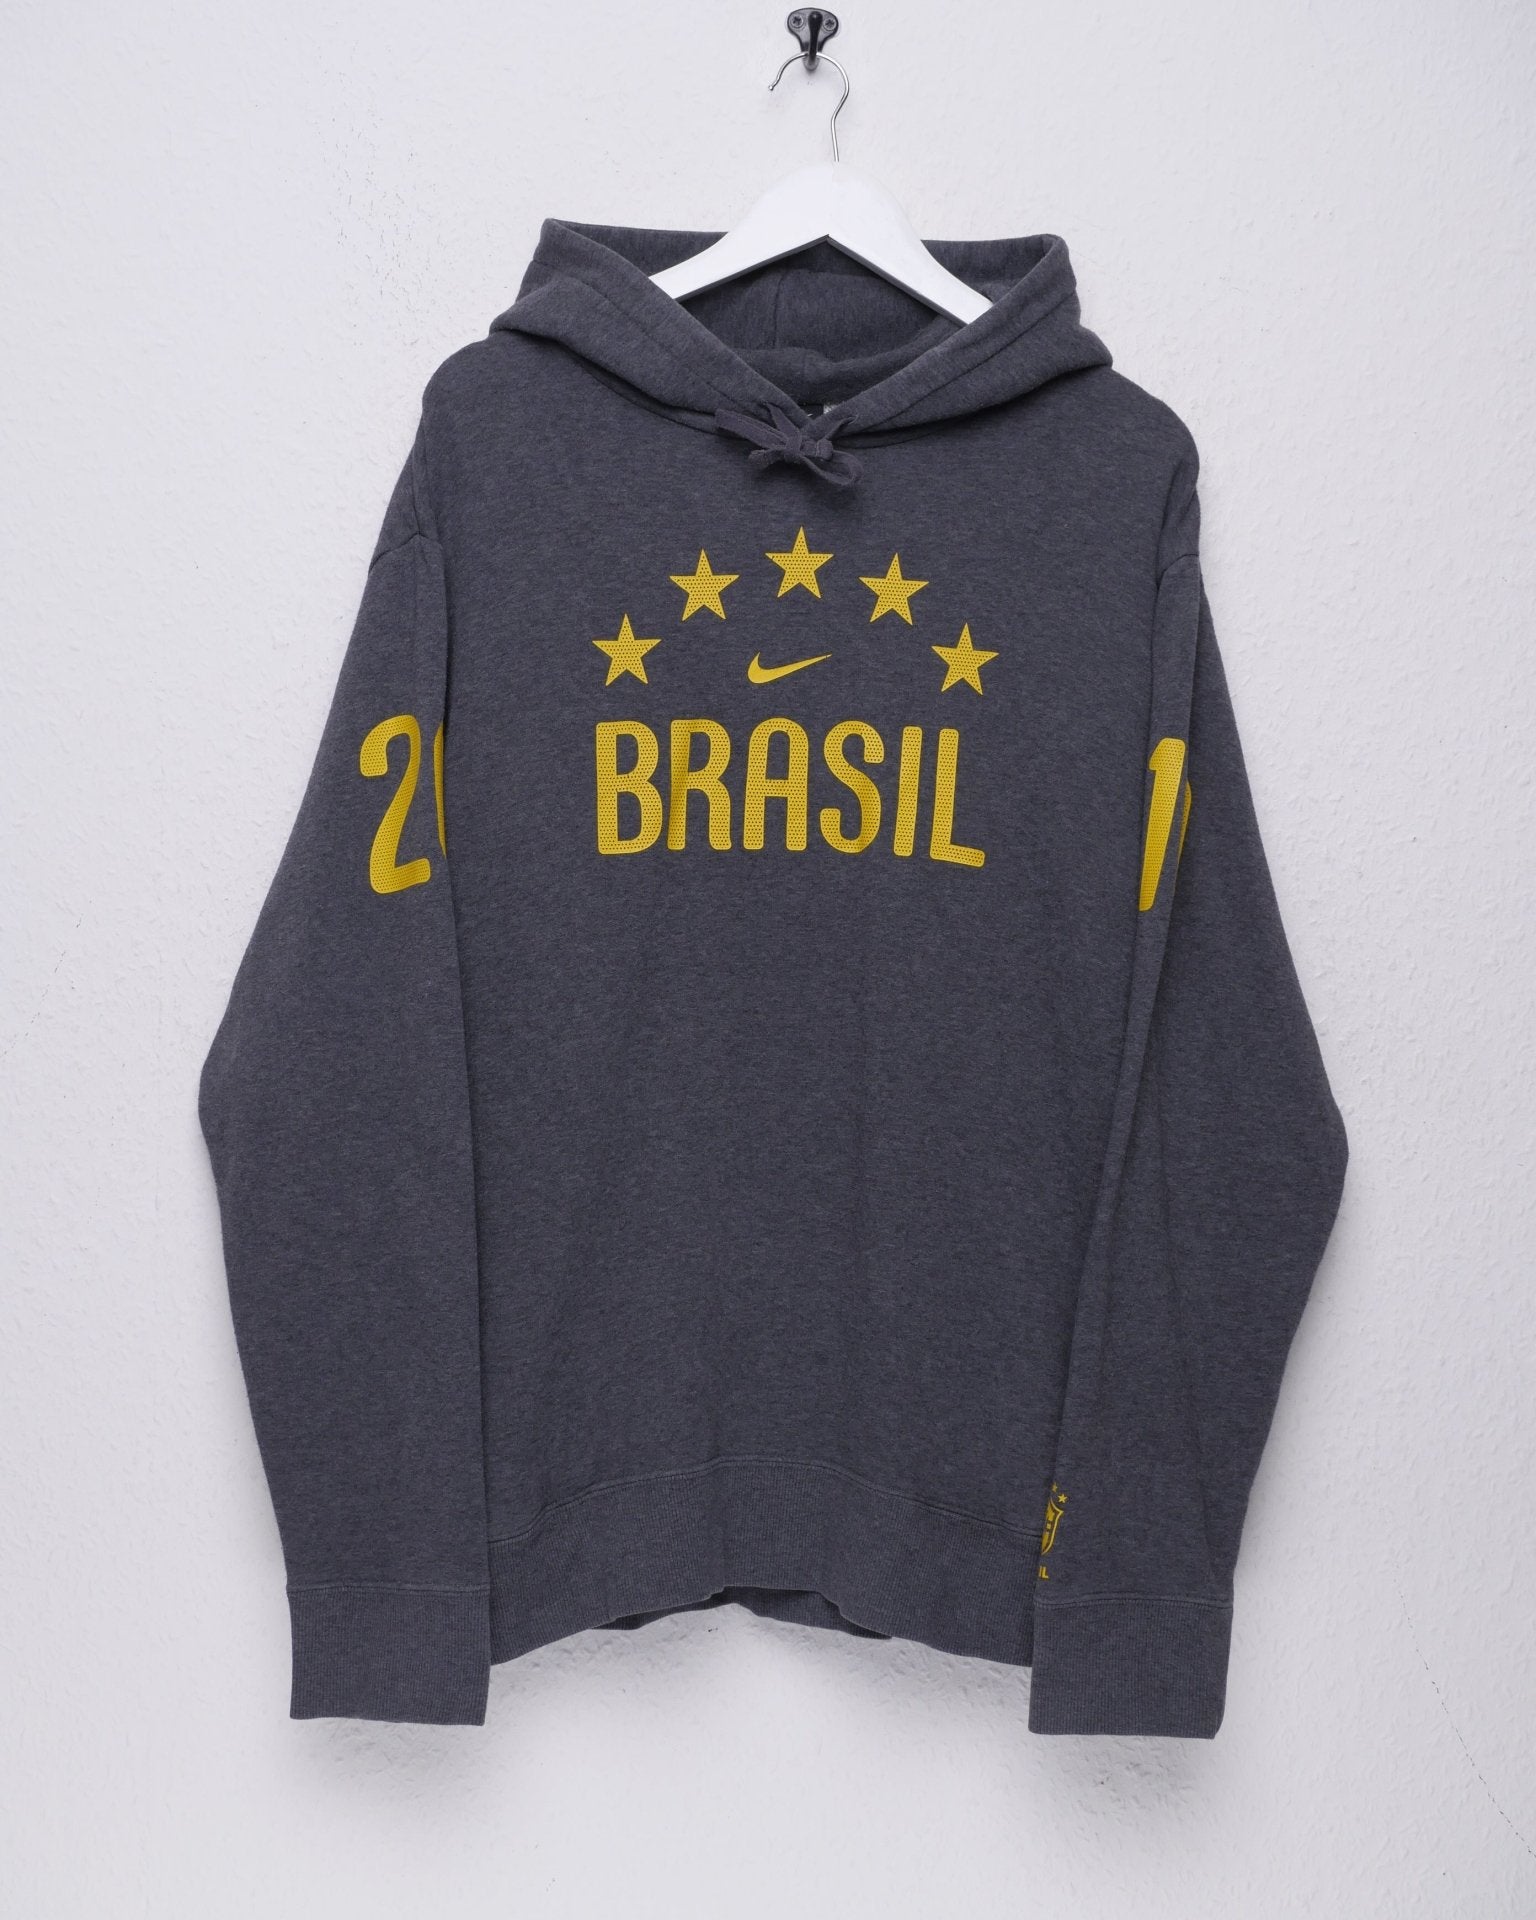 Nike 'Brasil' printed Logo grey Hoodie - Peeces